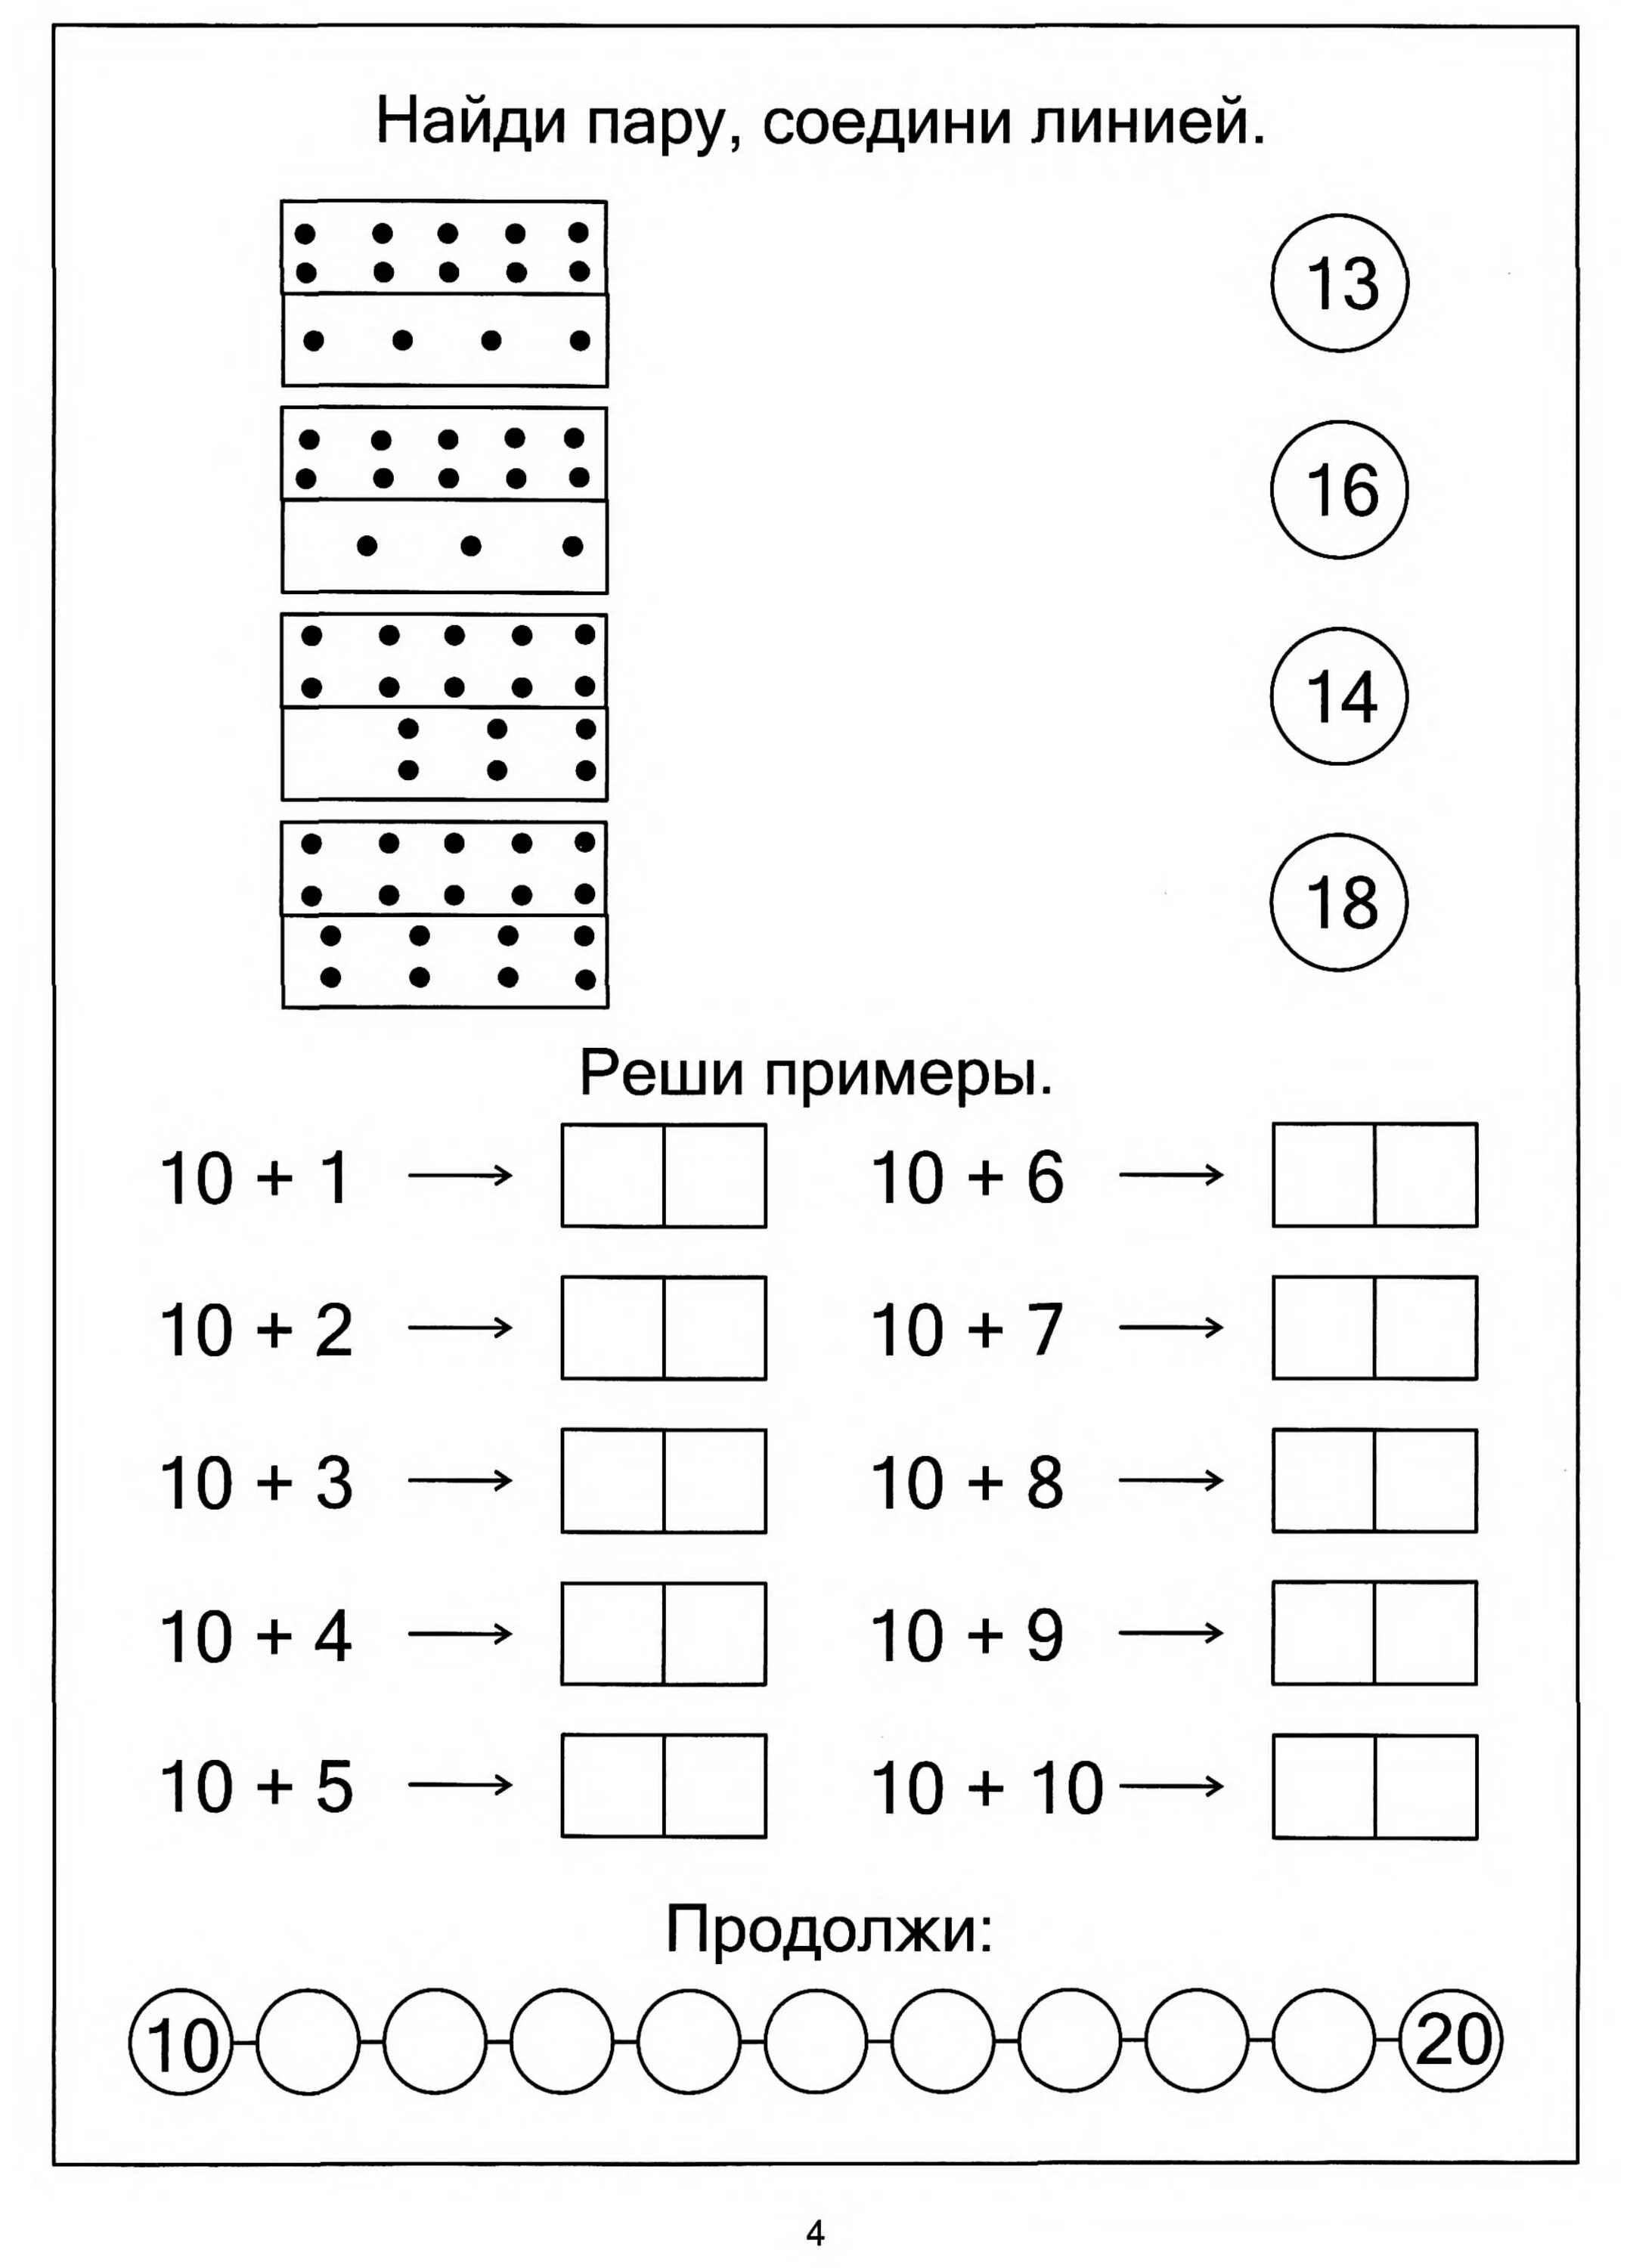 Математика задачи для дошкольников 6-7 лет задания. Задания по математике для дошкольников 5-6 лет задачи. Математические задачки для дошкольников 6-7 лет. Математические задачки для дошкольников 5-6 лет.